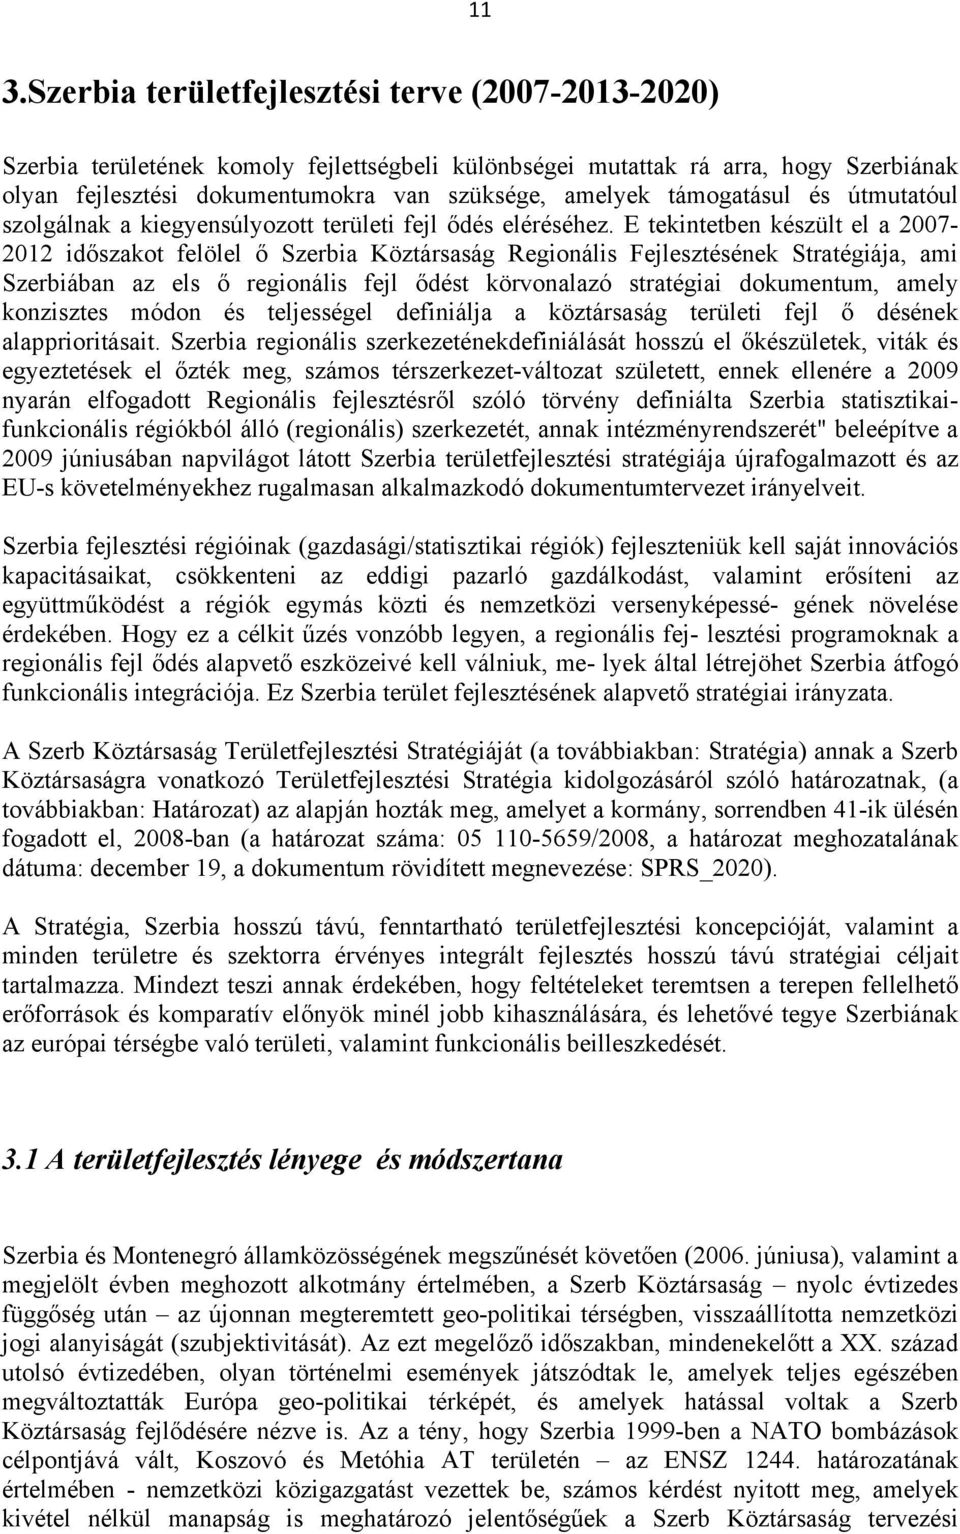 E tekintetben készült el a 2007-2012 időszakot felölel ő Szerbia Köztársaság Regionális Fejlesztésének Stratégiája, ami Szerbiában az els ő regionális fejl ődést körvonalazó stratégiai dokumentum,